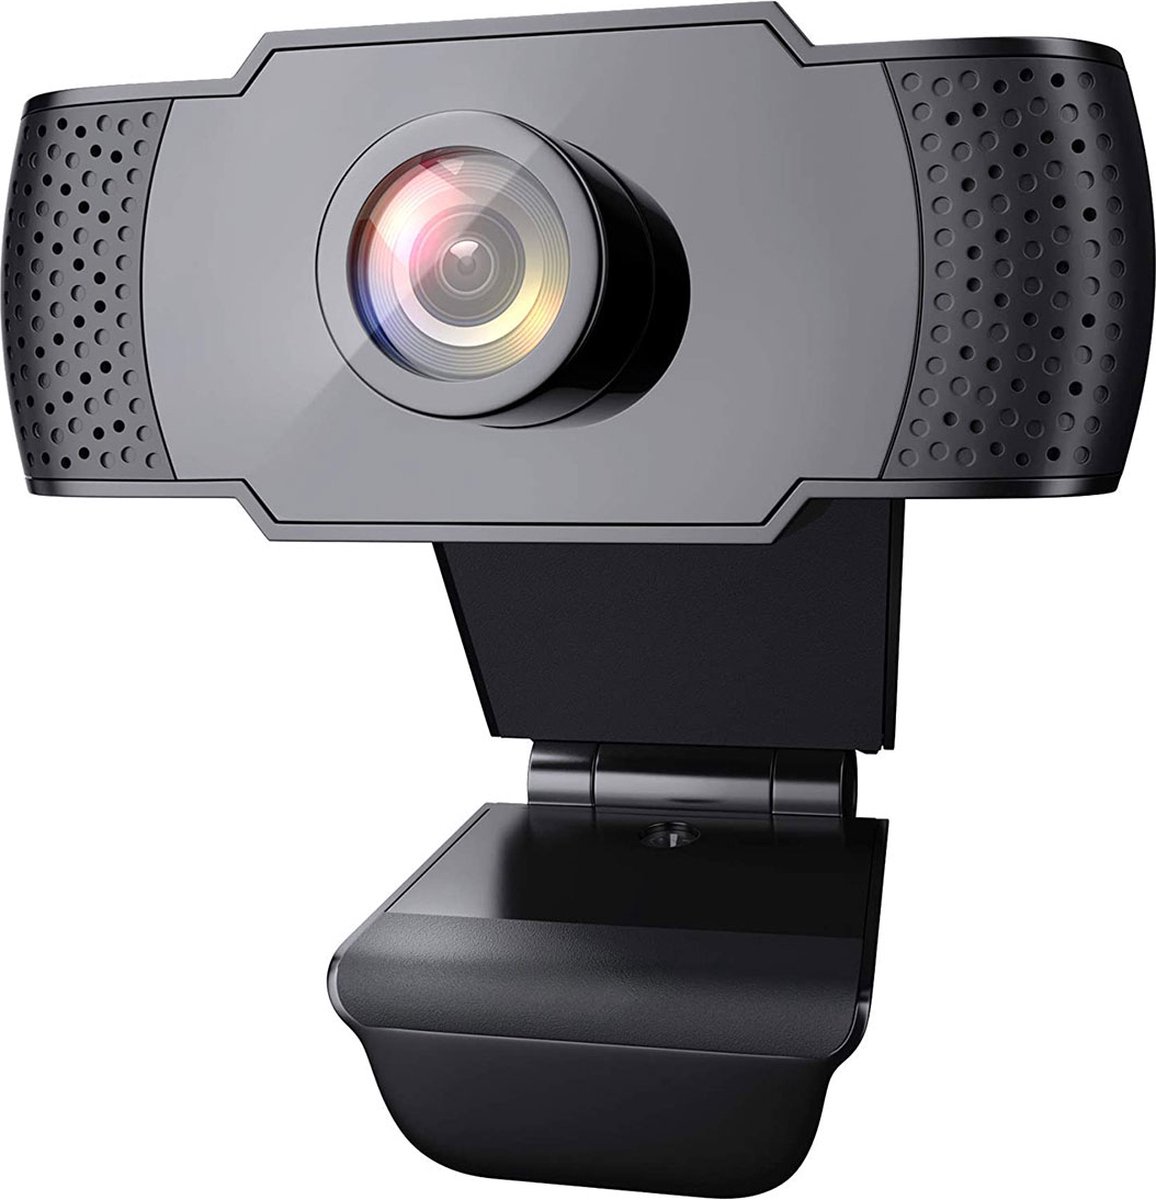 Wansview 101 - 2Megapixel Full HD Webcam met Ingebouwd Microfoon | | webcam voor pc | webcam met microfoon | webcam usb | Perfect voor Live Streaming, gaming en vergaderingen